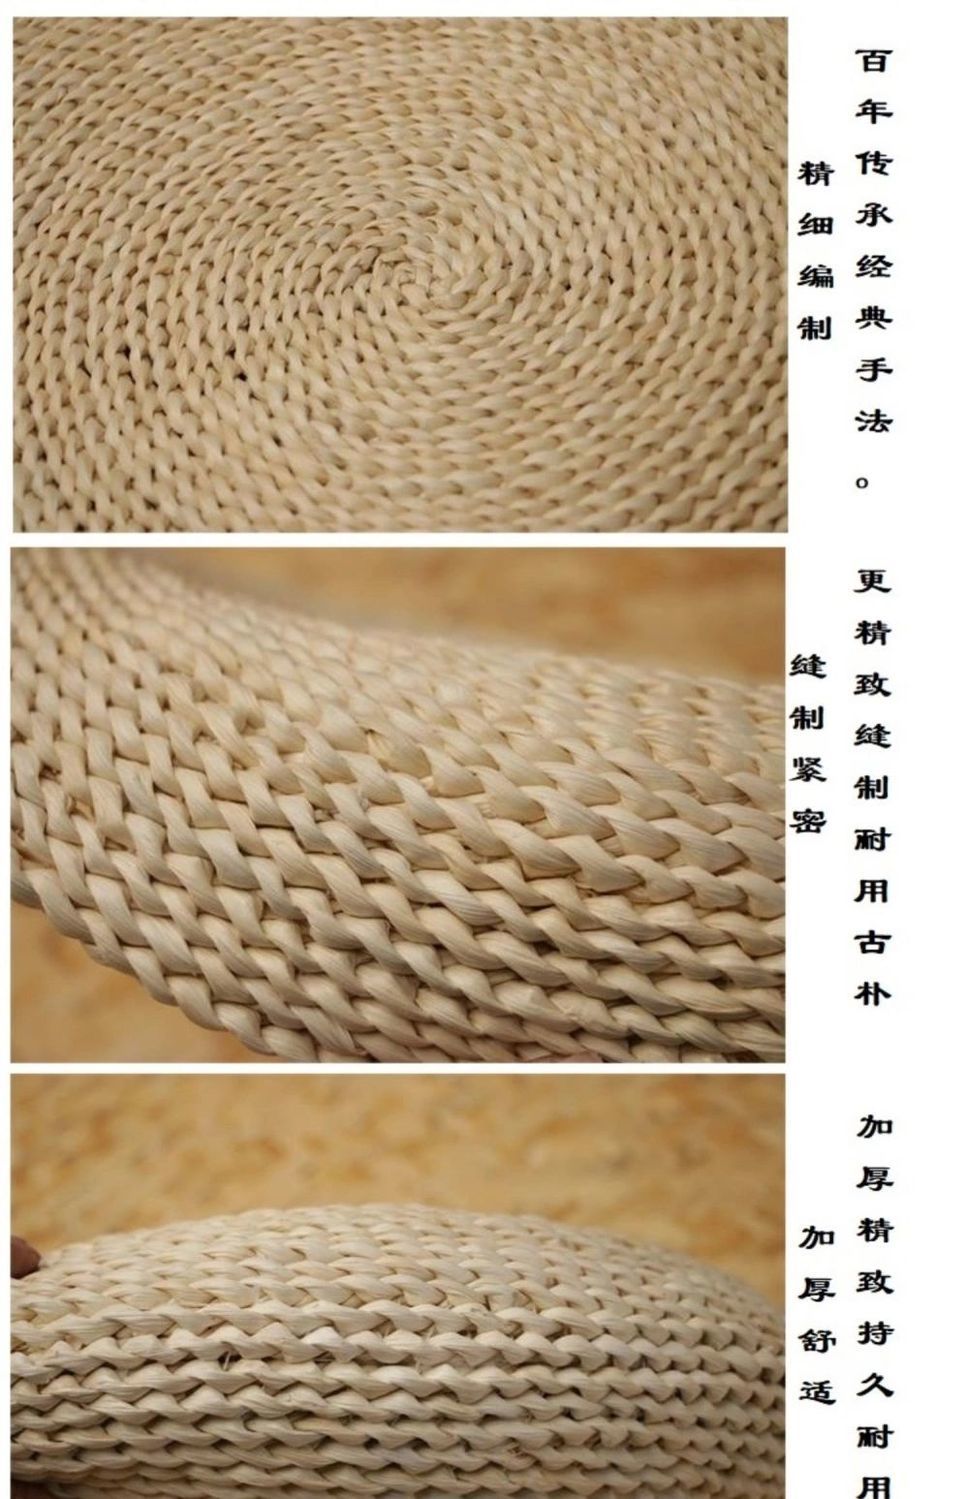 草坐垫编织方法图解图片